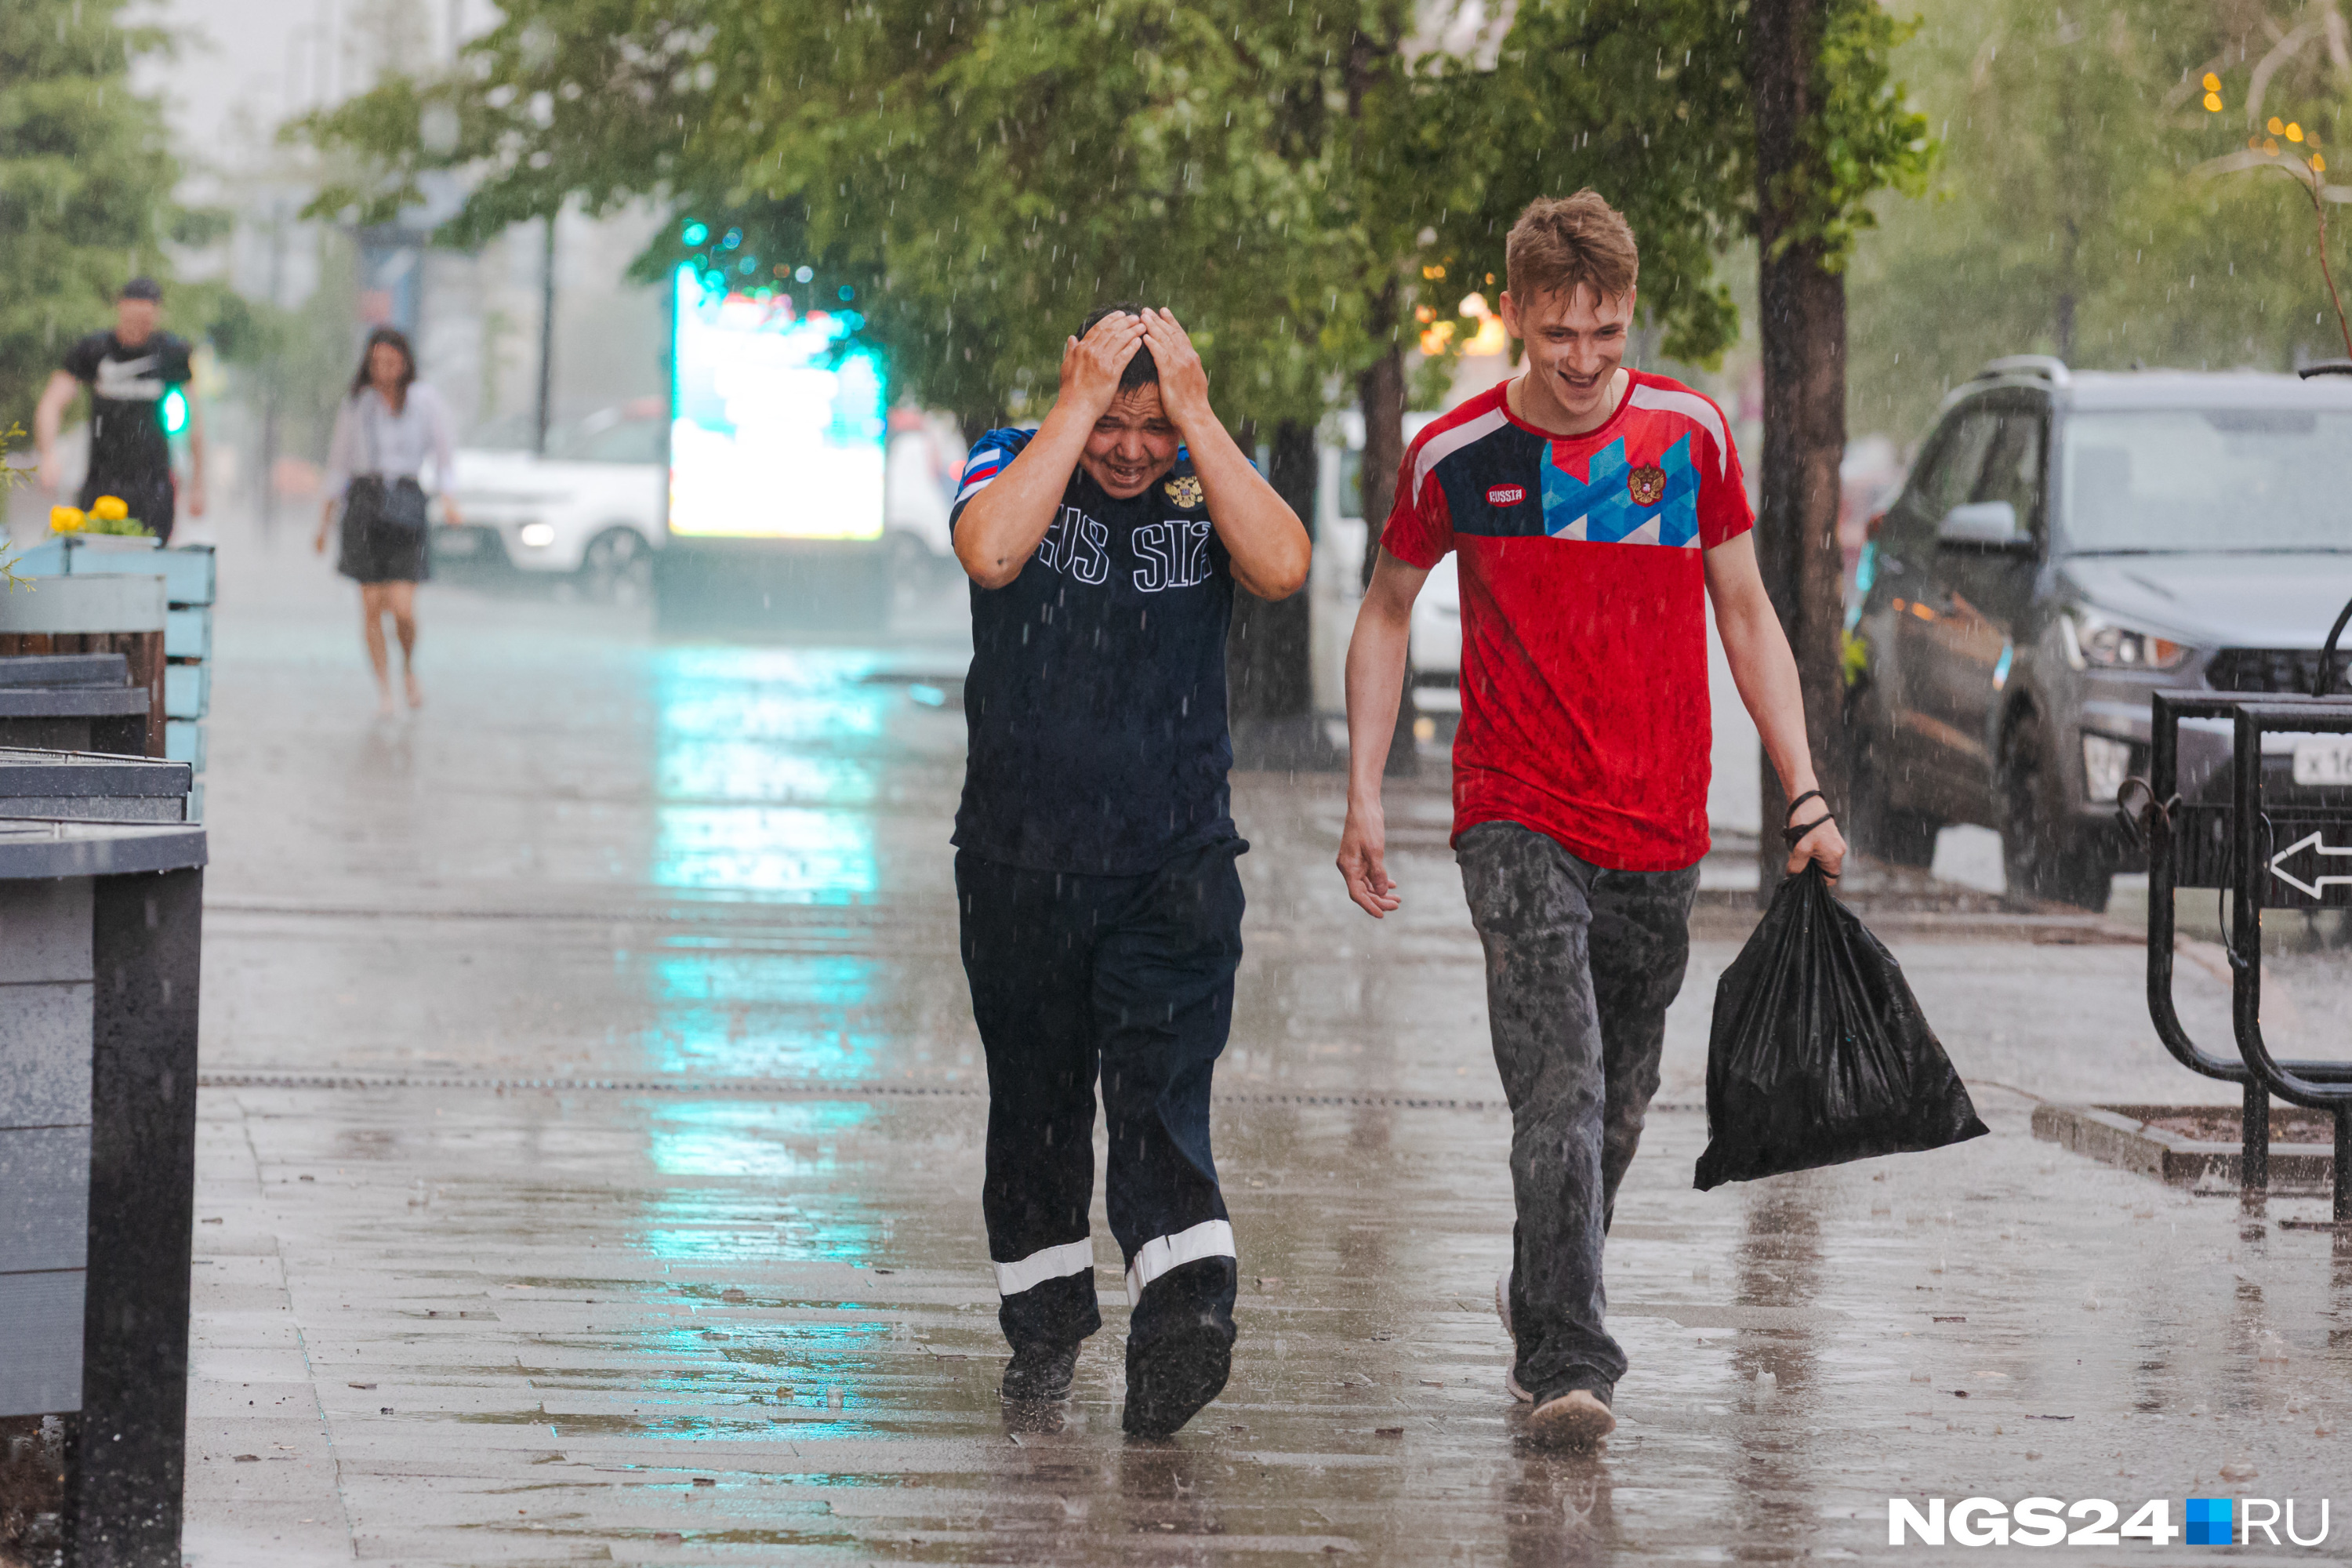 Доставайте зонтики! Погода в Красноярске на первую неделю августа